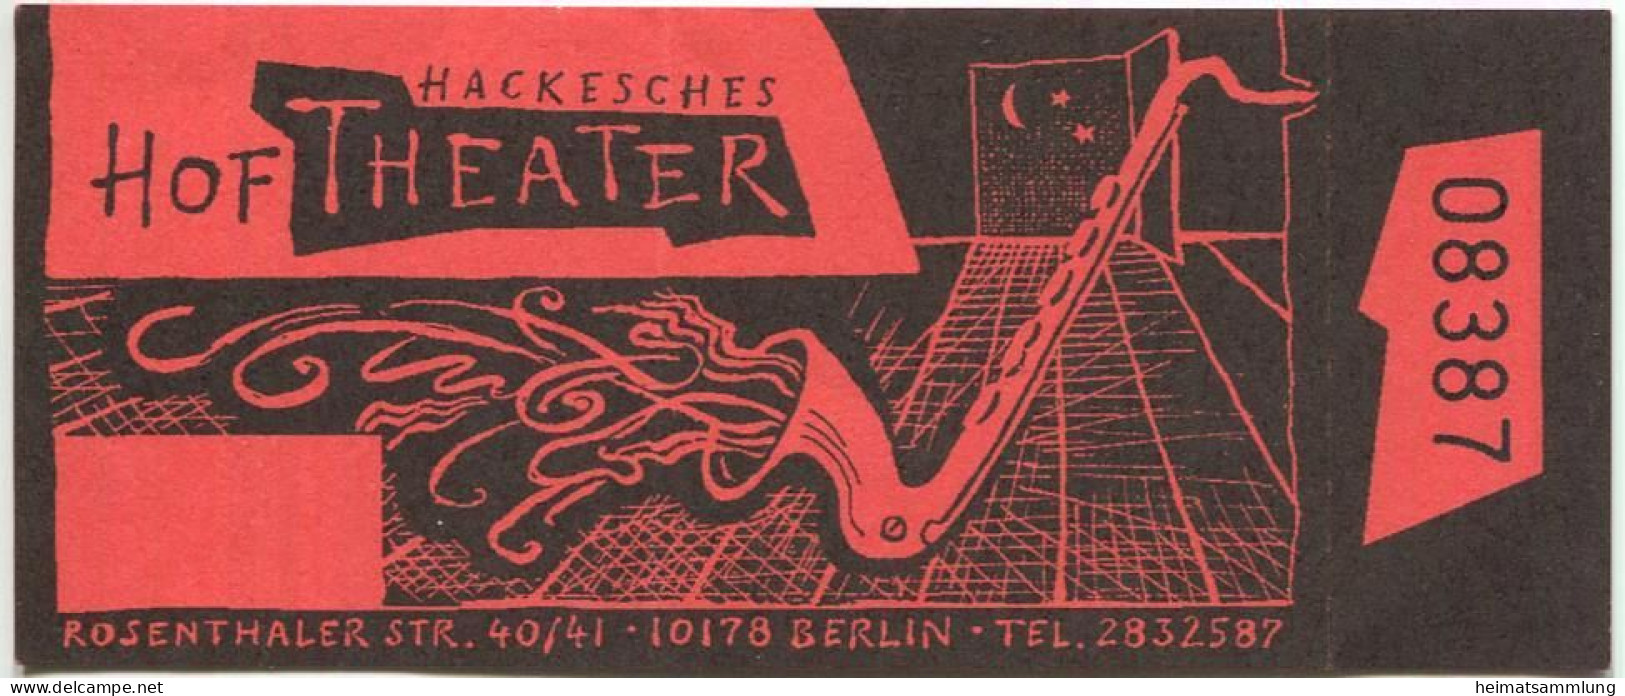 Deutschland - Berlin - Hackesches Hof Theater - Rosenthaler Str. 40/41 - Eintrittskarte - Tickets - Vouchers